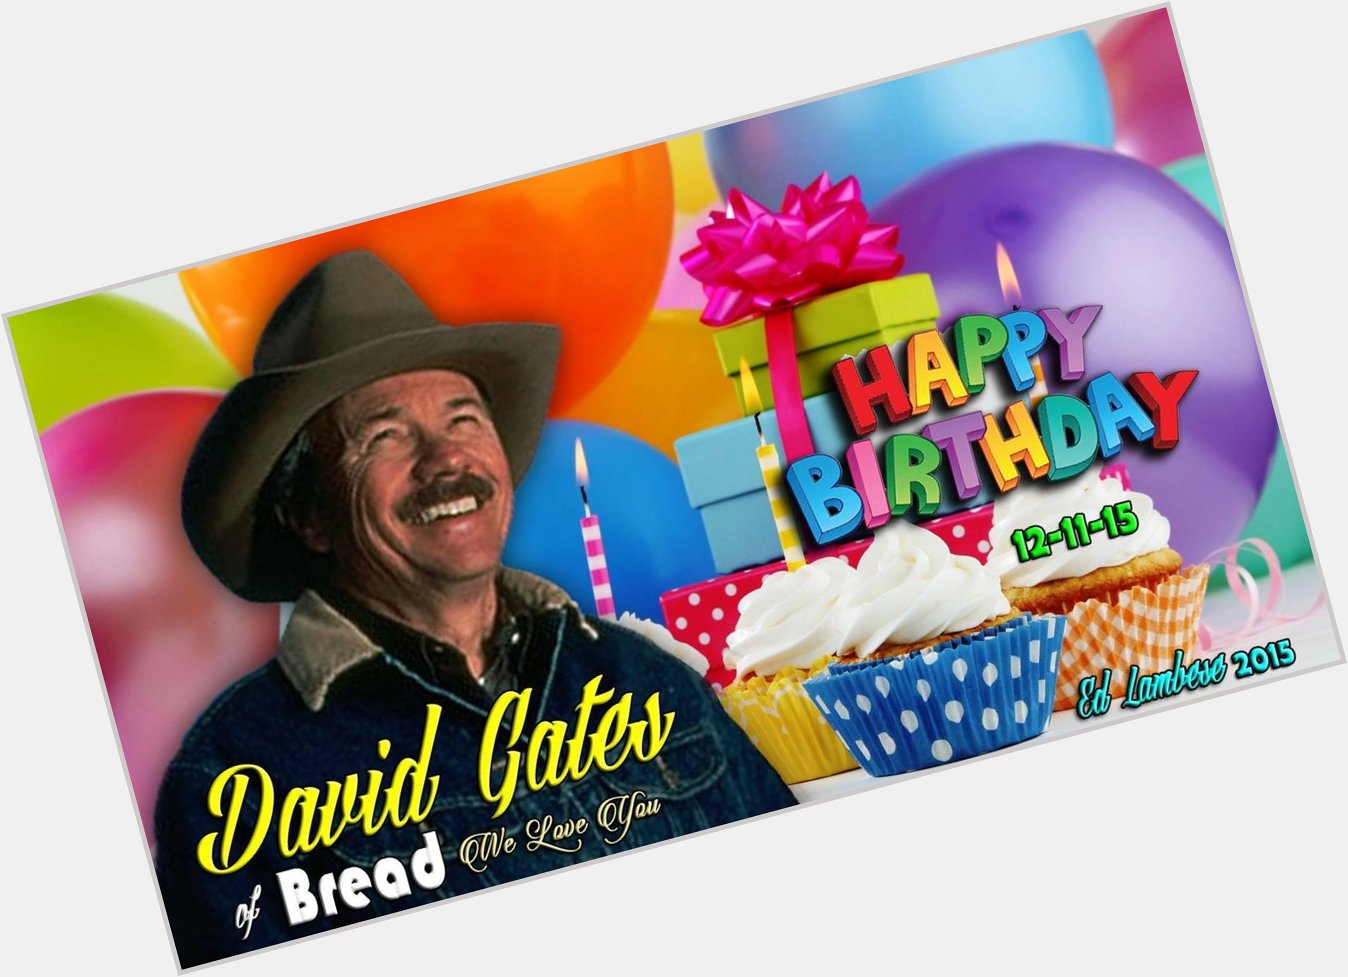 Happy birthday David Gates! 